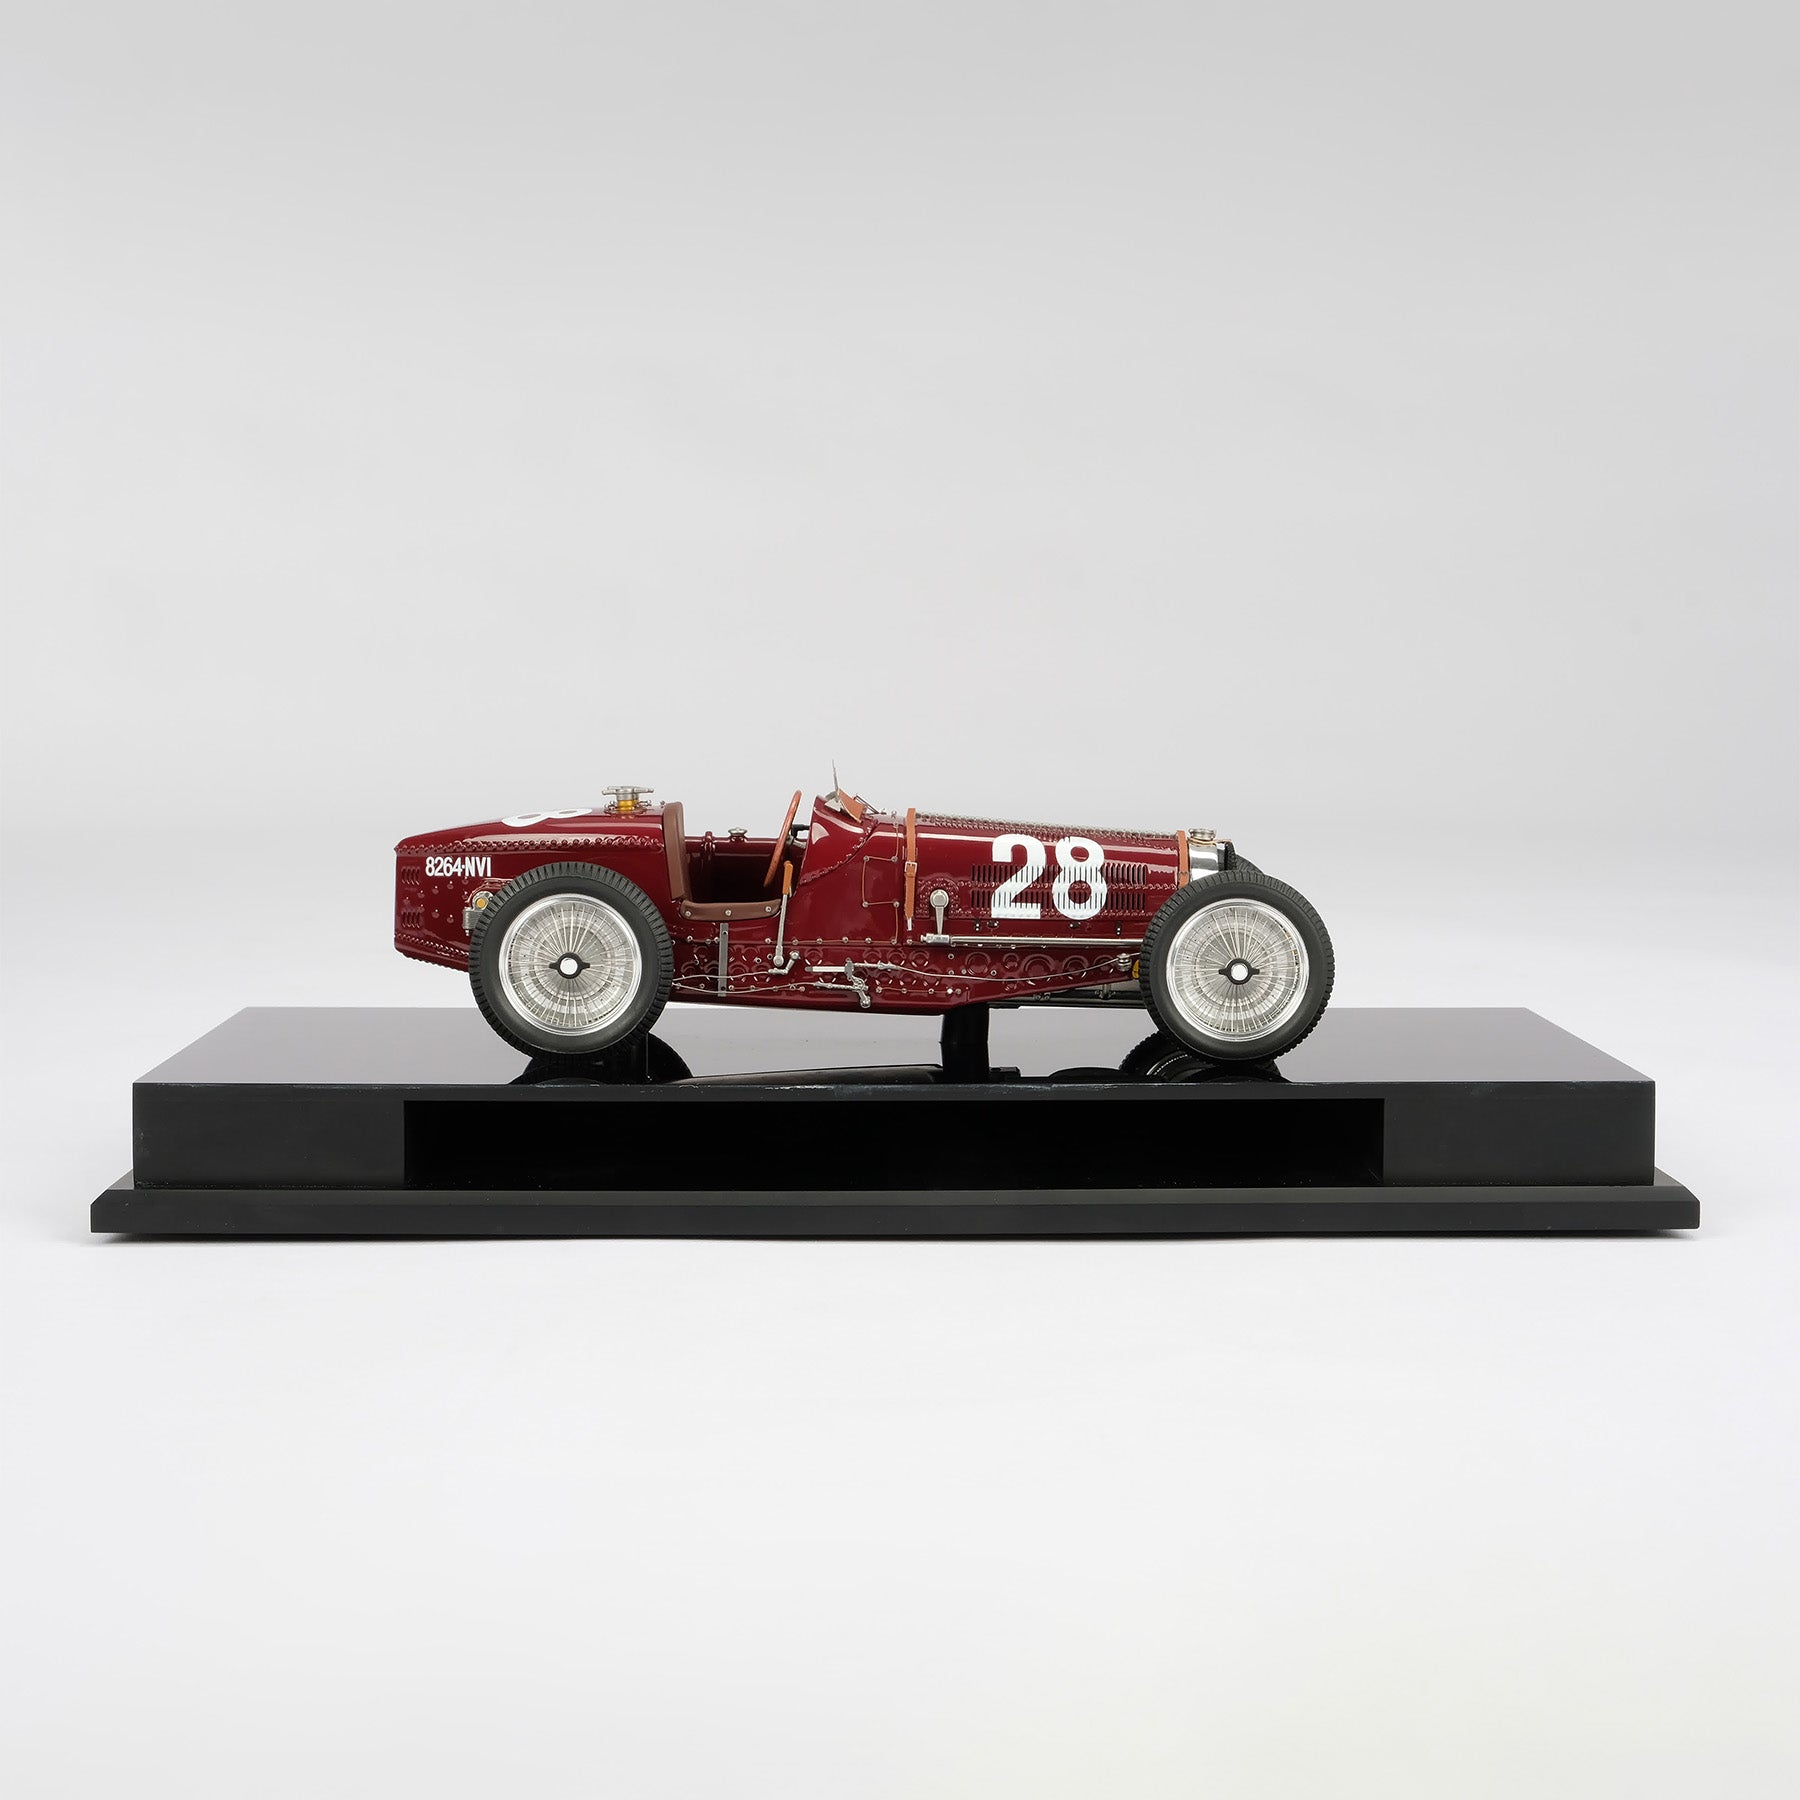 Bugatti Type 59 at 1:18 scale